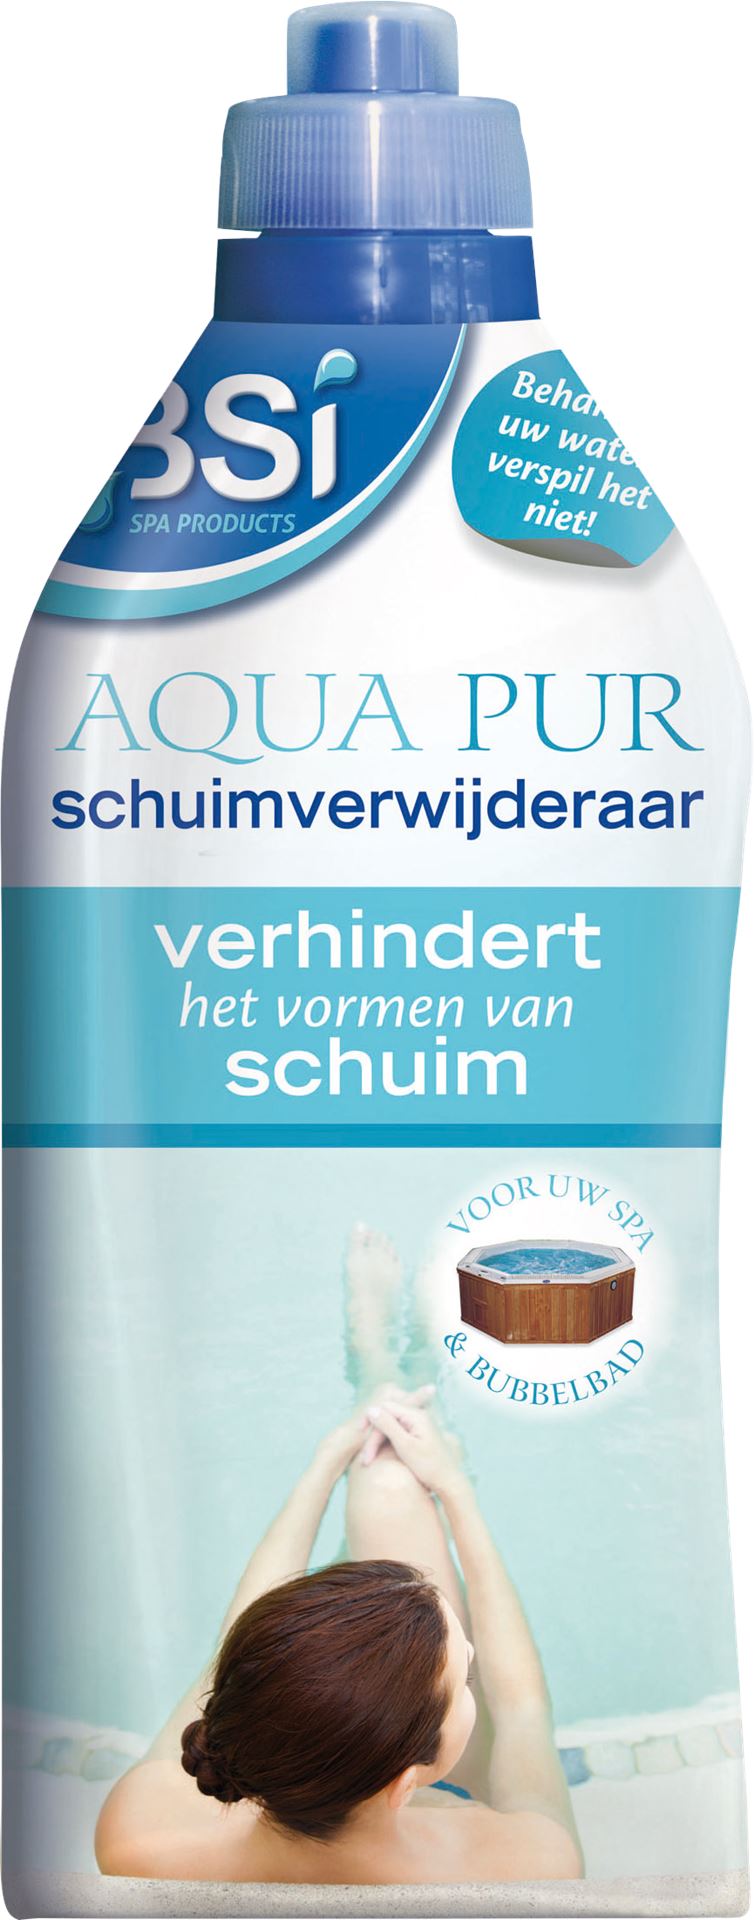 Aqua-pur-schuimverwijderaar-1-L